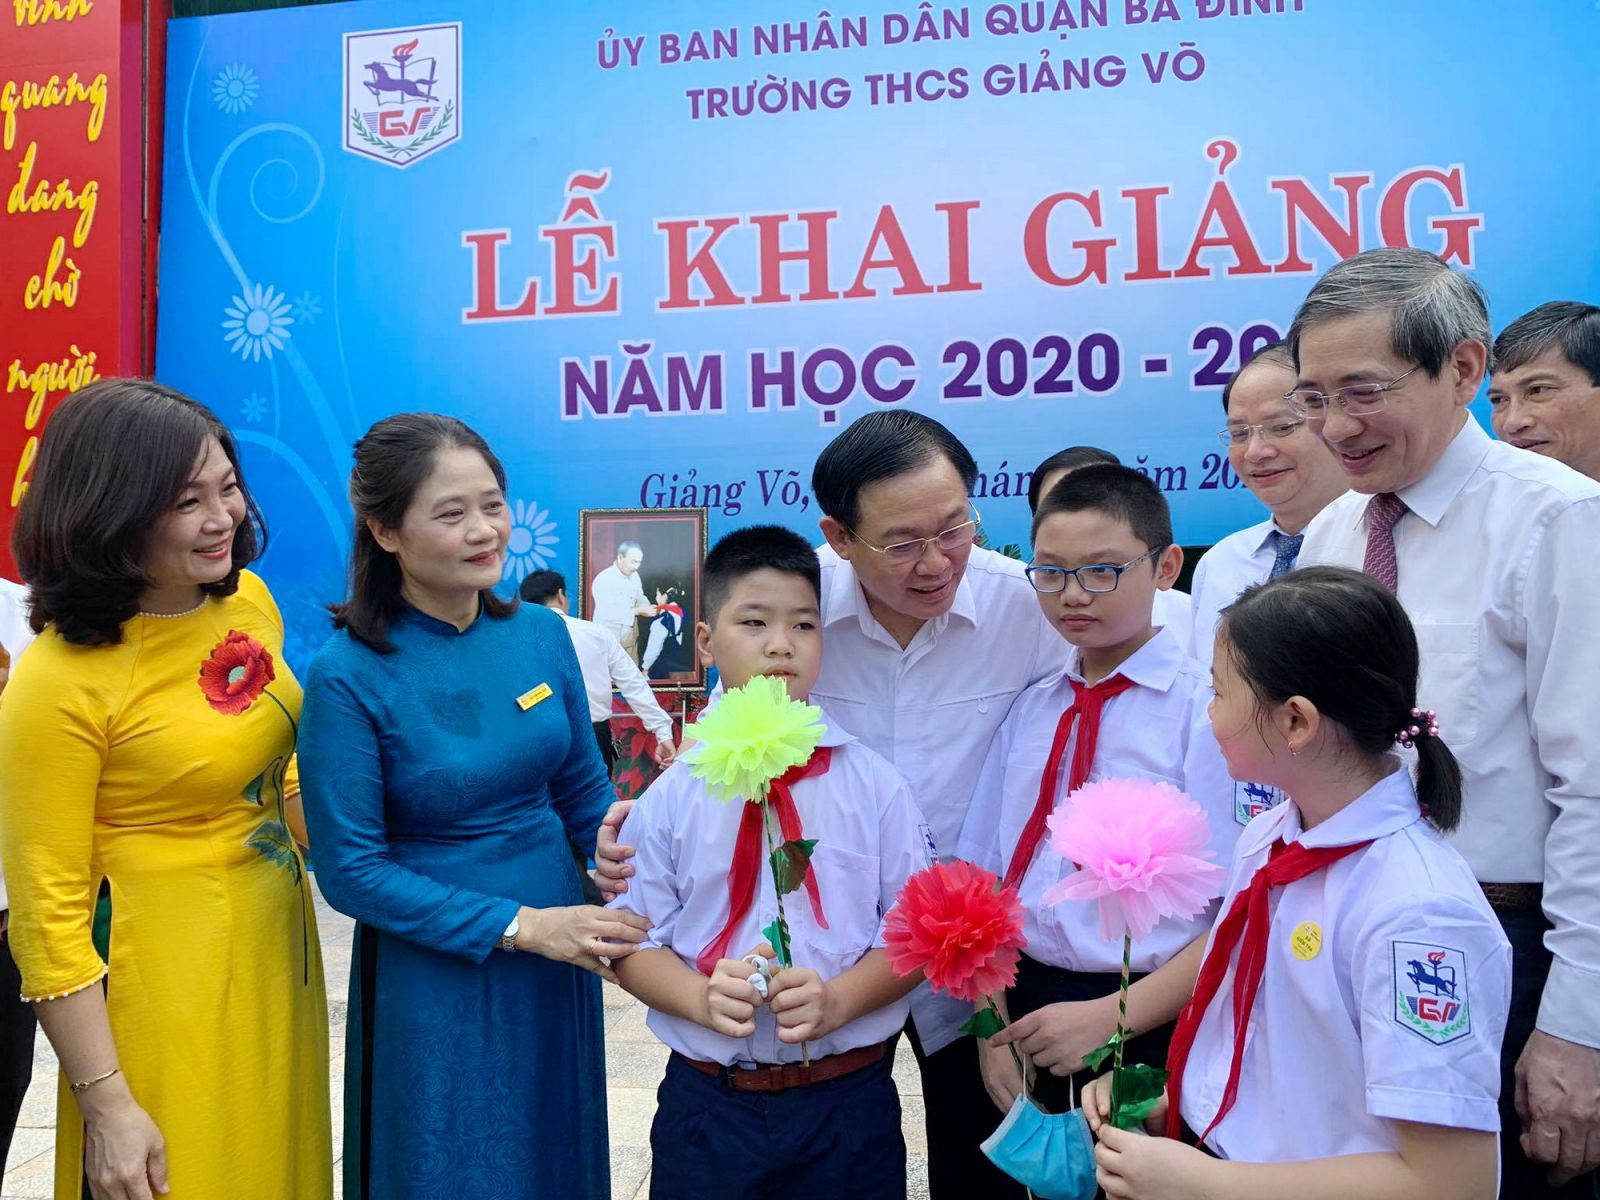 Bí thư Thành ủy Hà Nội dự lễ khai giảng, tặng quà cho học sinh Trường THCS Giảng Võ